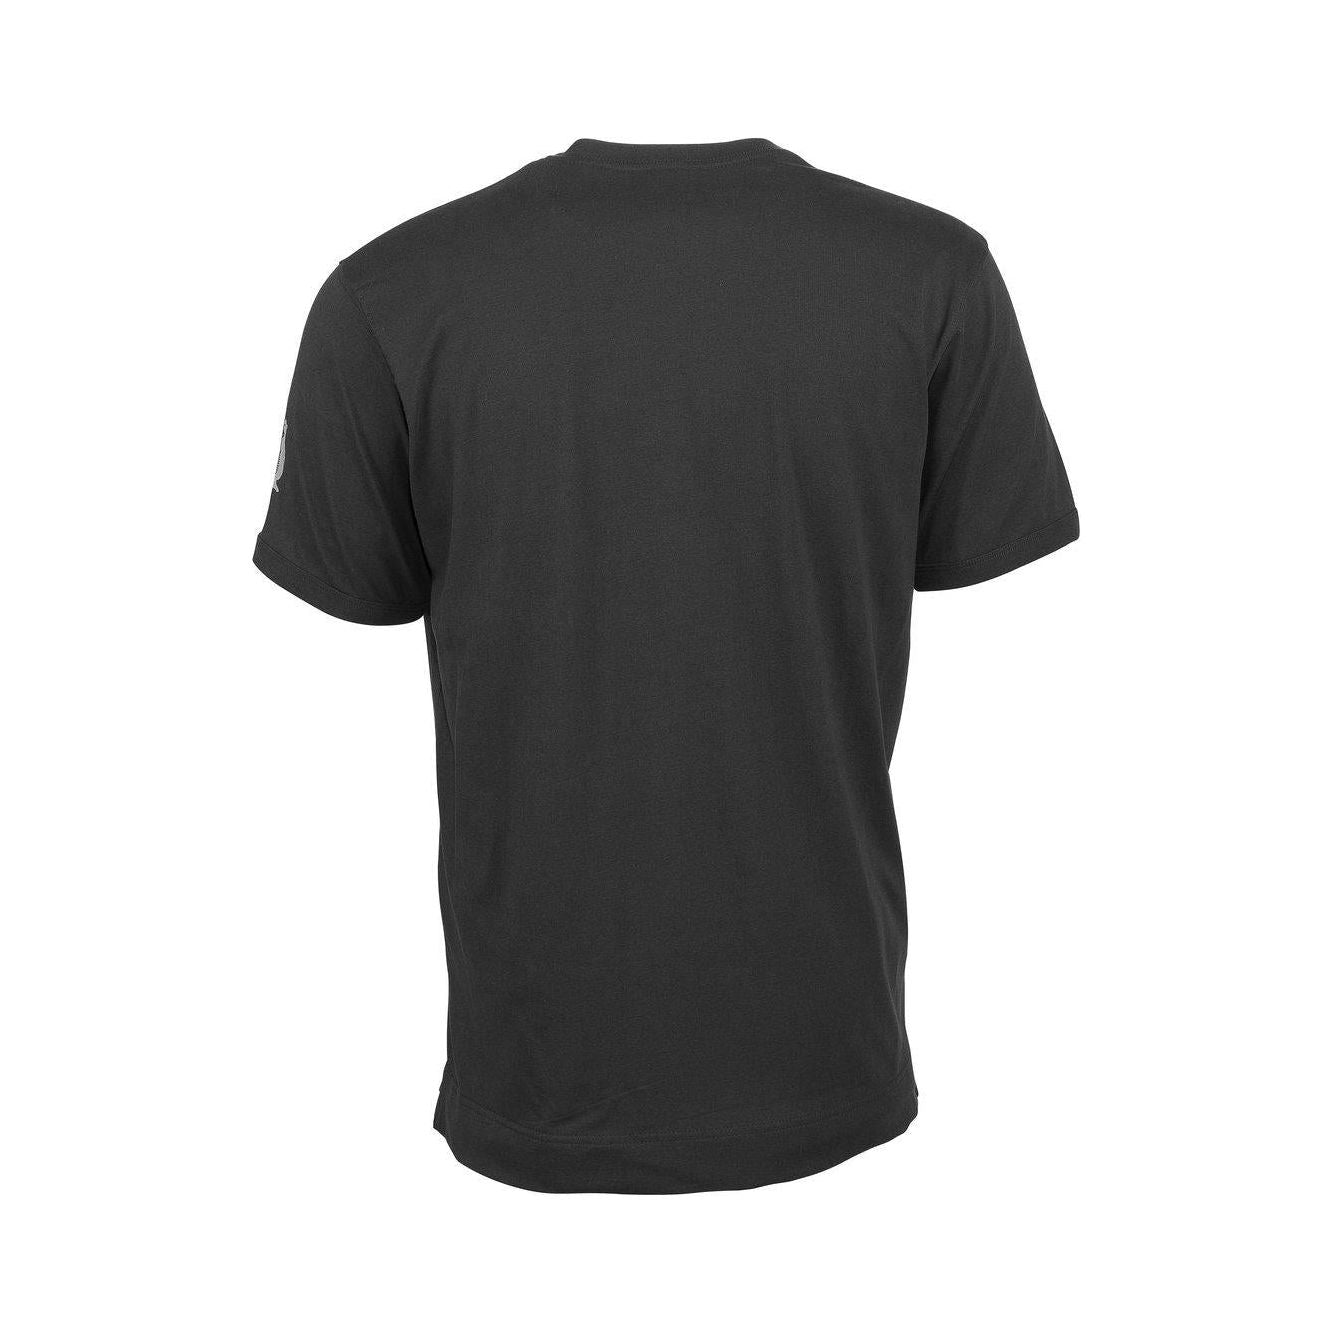 Mascot Algoso T-shirt V-Neck Black 50415-250-09 Back